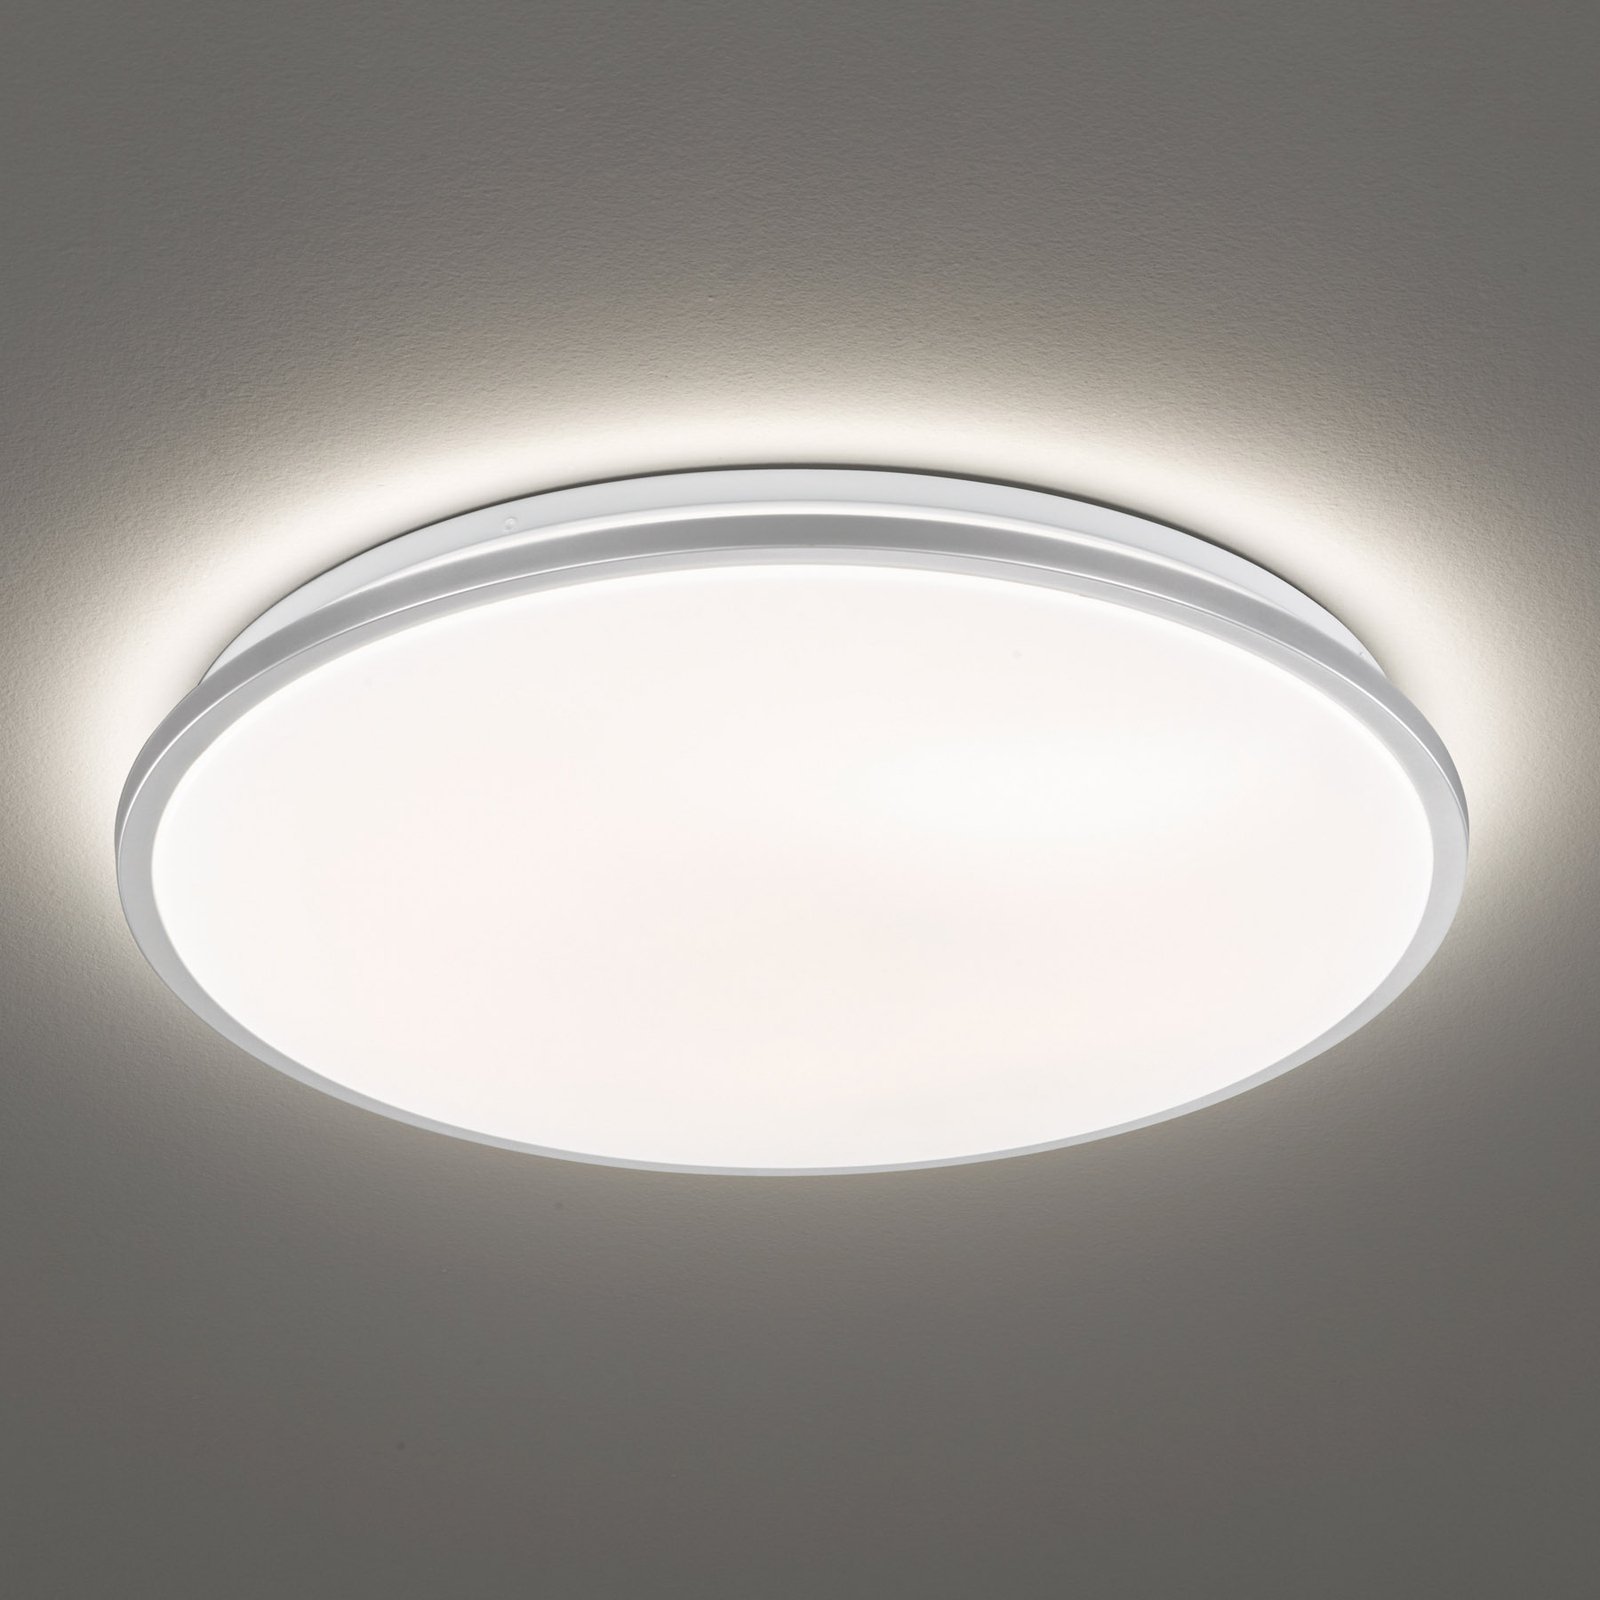 Jaso LED-taklampa, dimbar, Ø 40 cm, silver